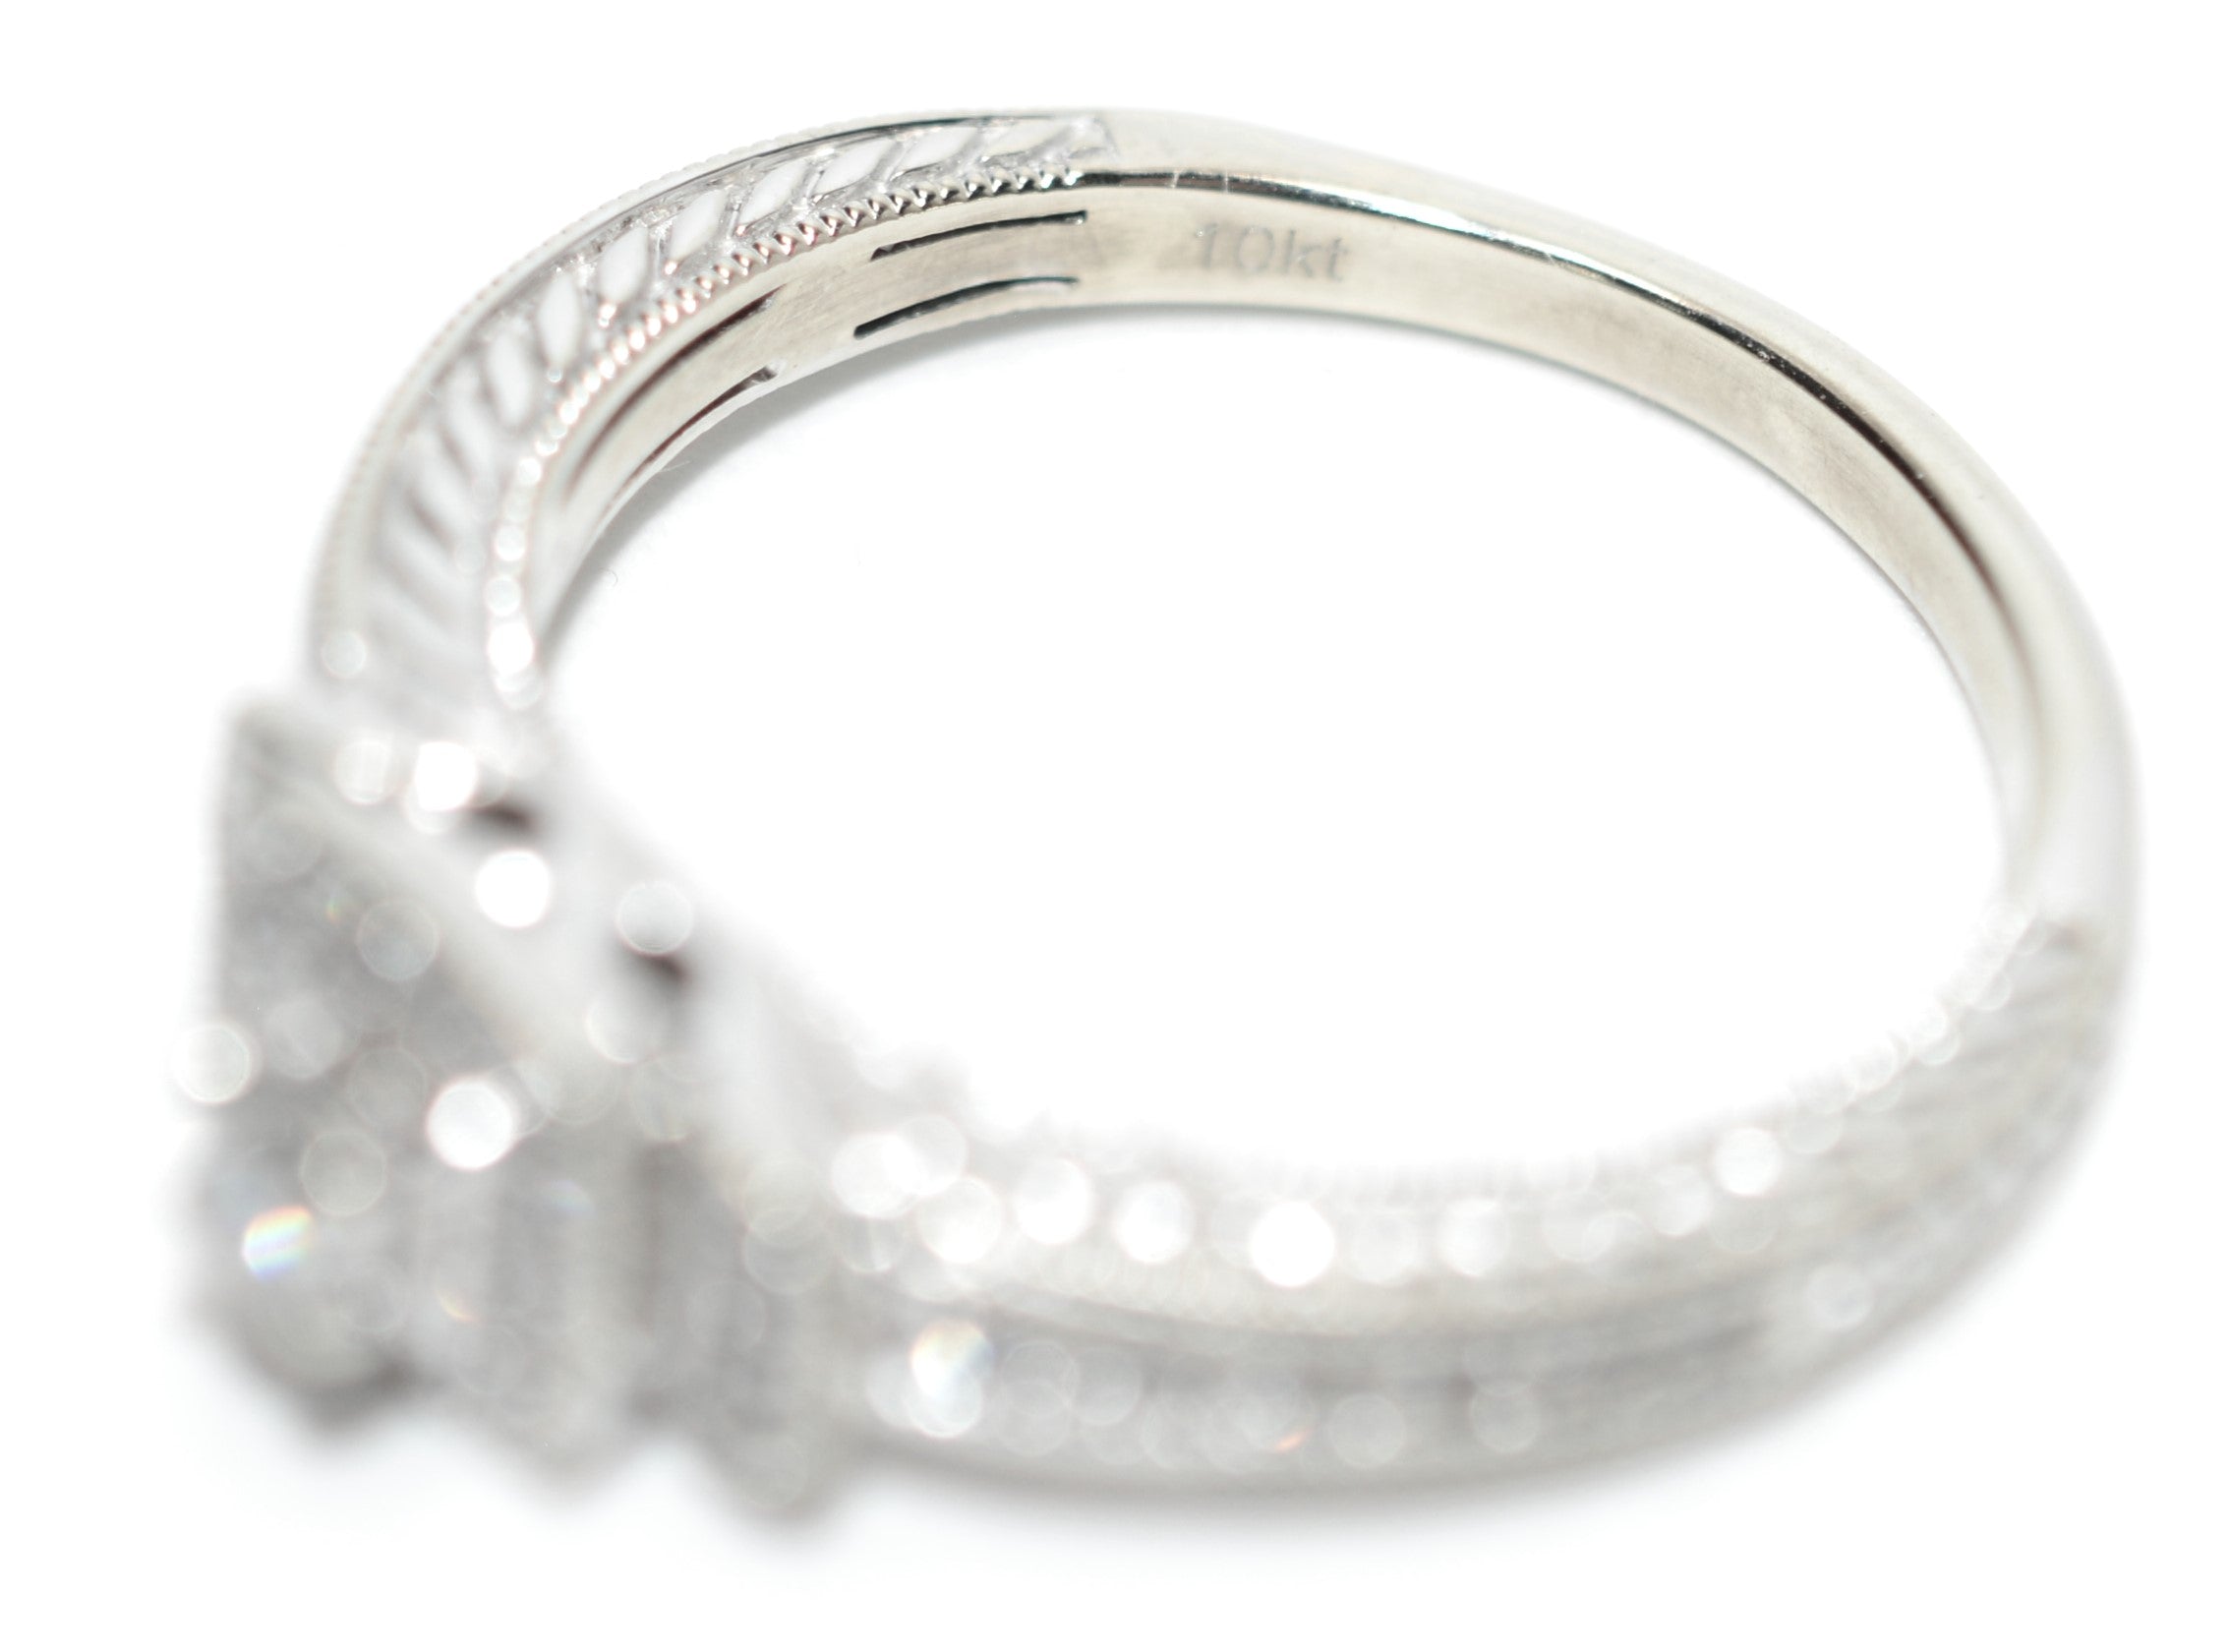 Natural Diamond Ring 10K White Gold .27tcw Engagement Ring Wedding Bridal Jewel